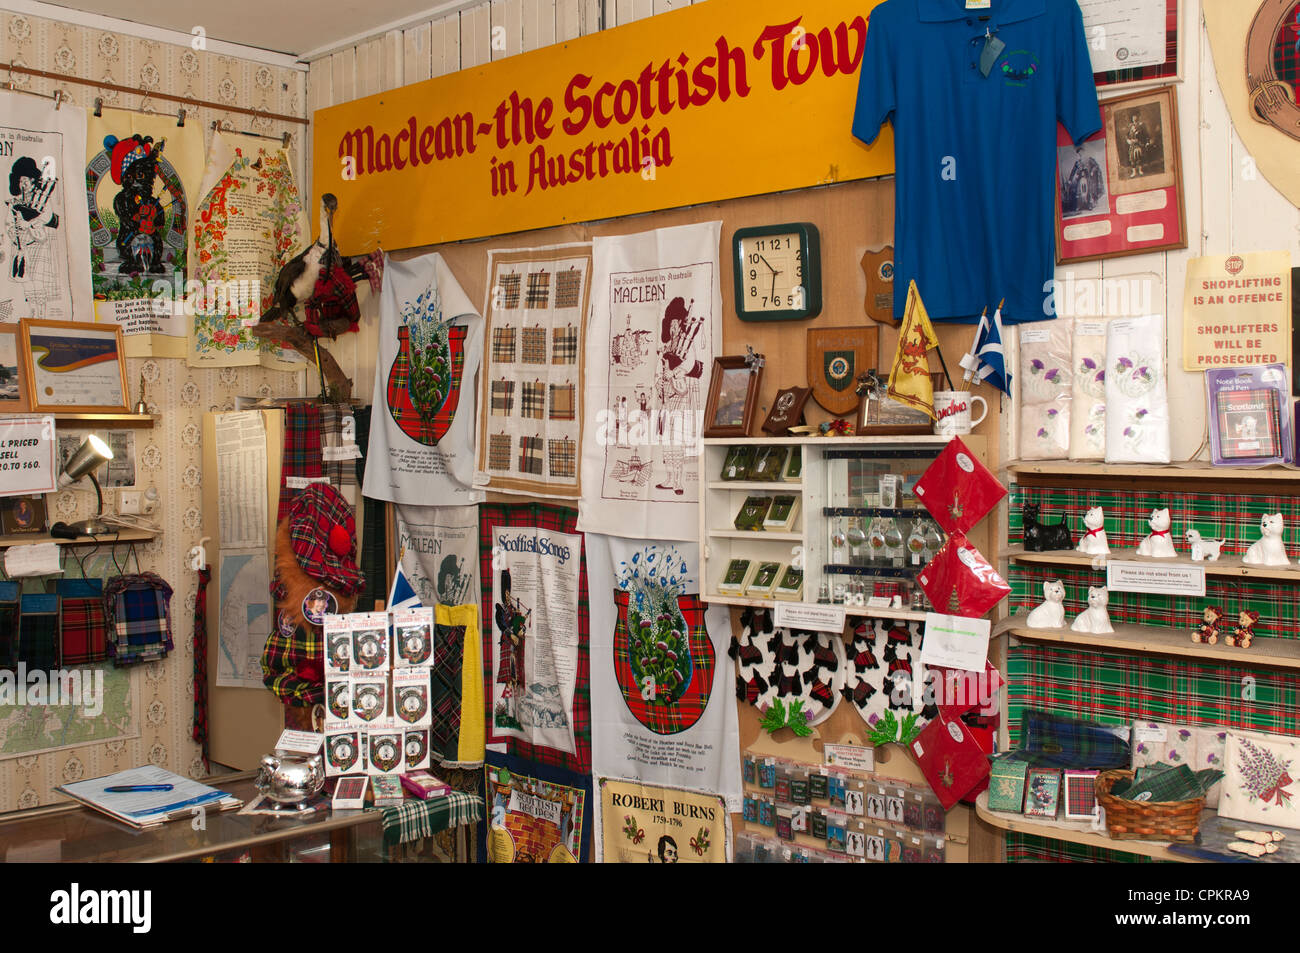 Boutique d'information dans la ville de Maclean, connue pour son patrimoine écossais et festival annuel d'un même thème. Banque D'Images